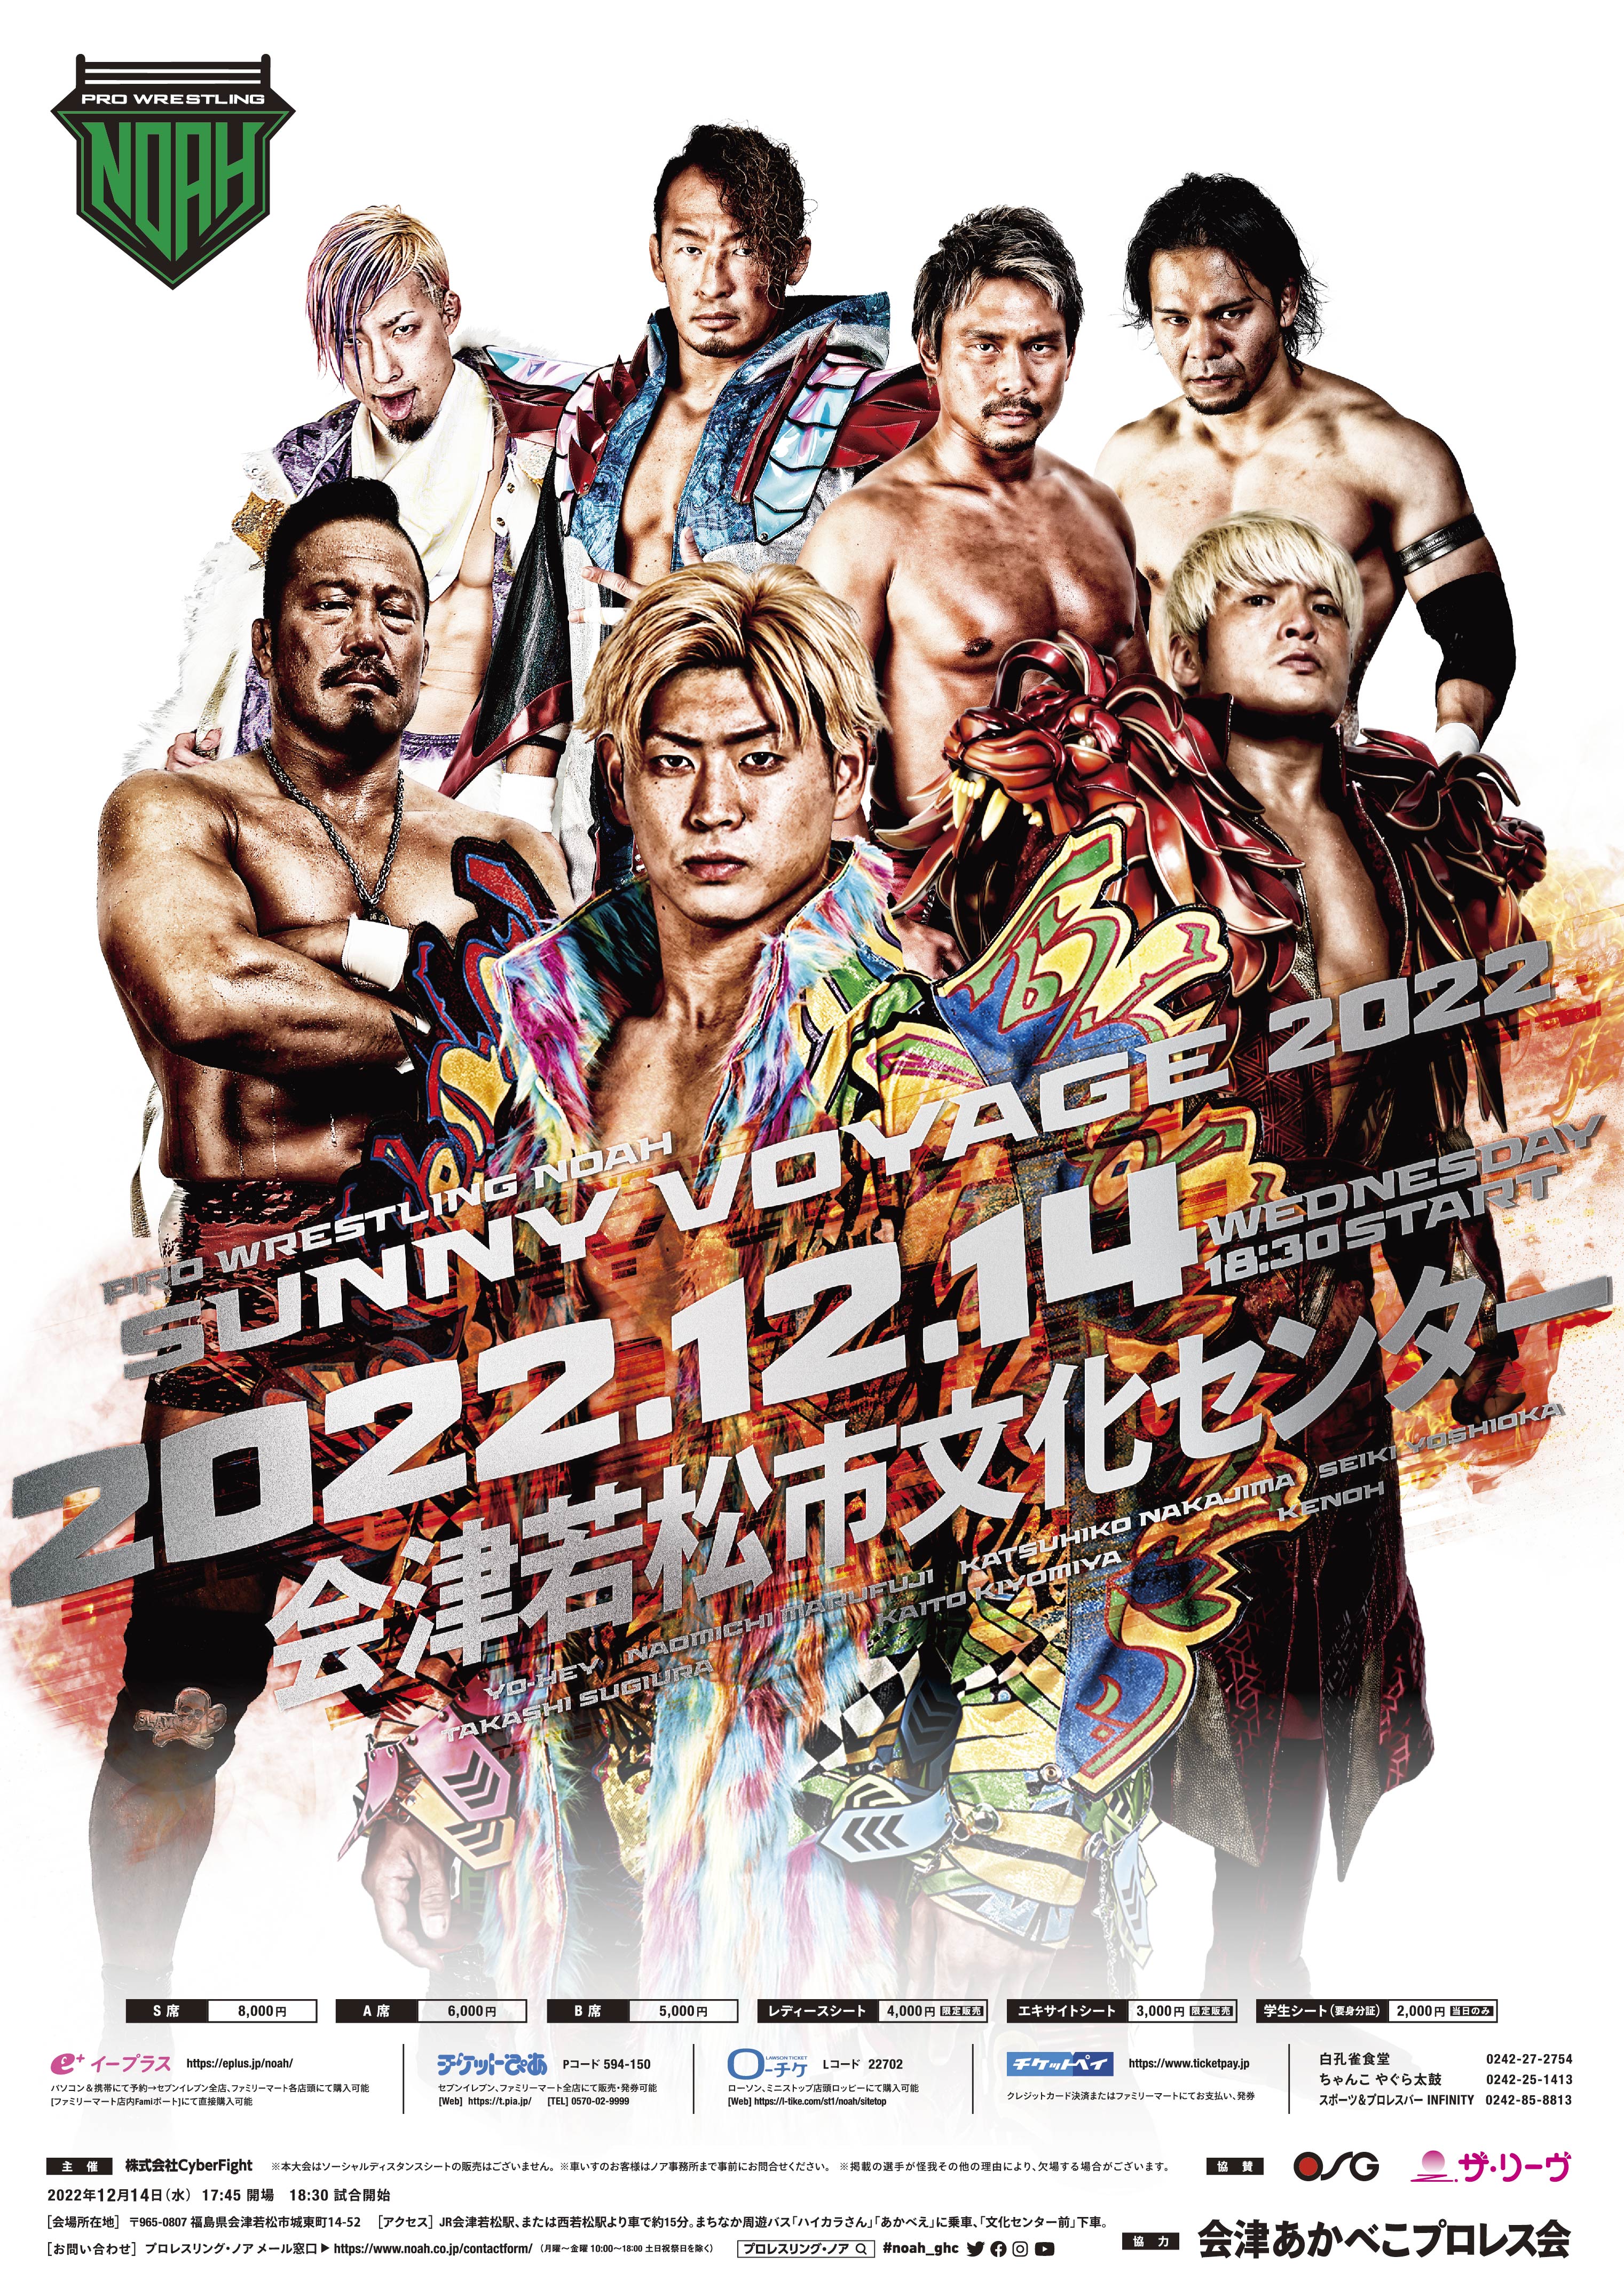 22年12月14日 水 Sunny Voyage 22 プロレスリング ノア公式サイト Pro Wrestling Noah Official Site